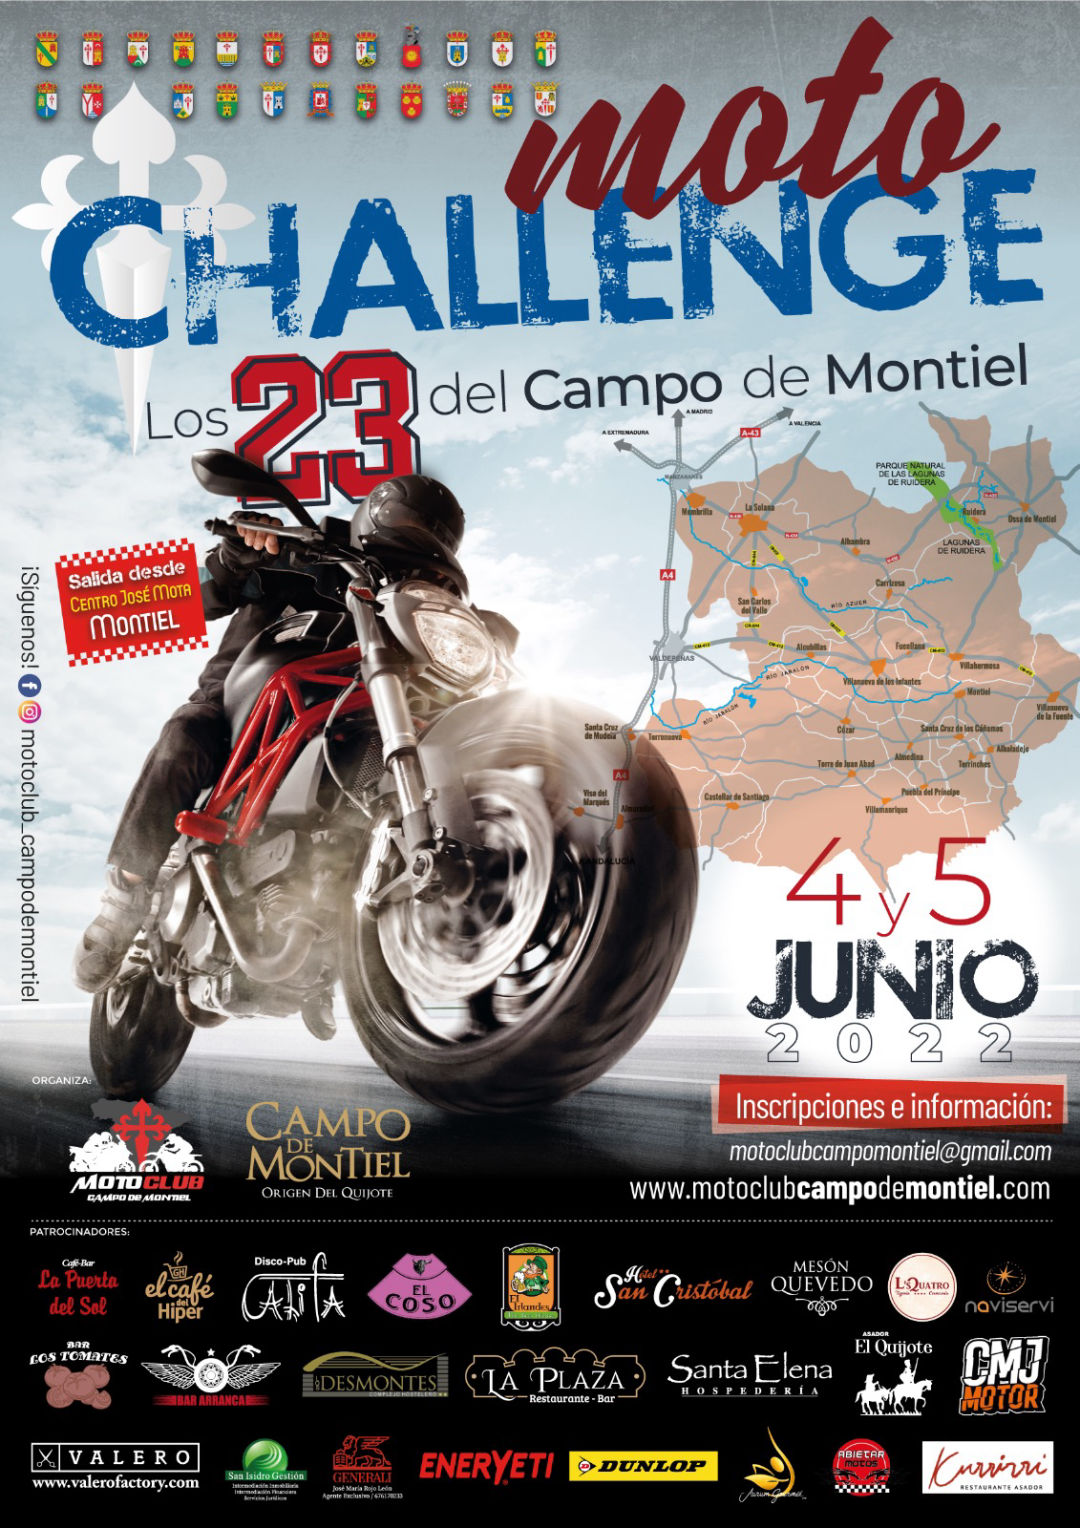 Moto Challenge Los 23 del Campo de Montiel